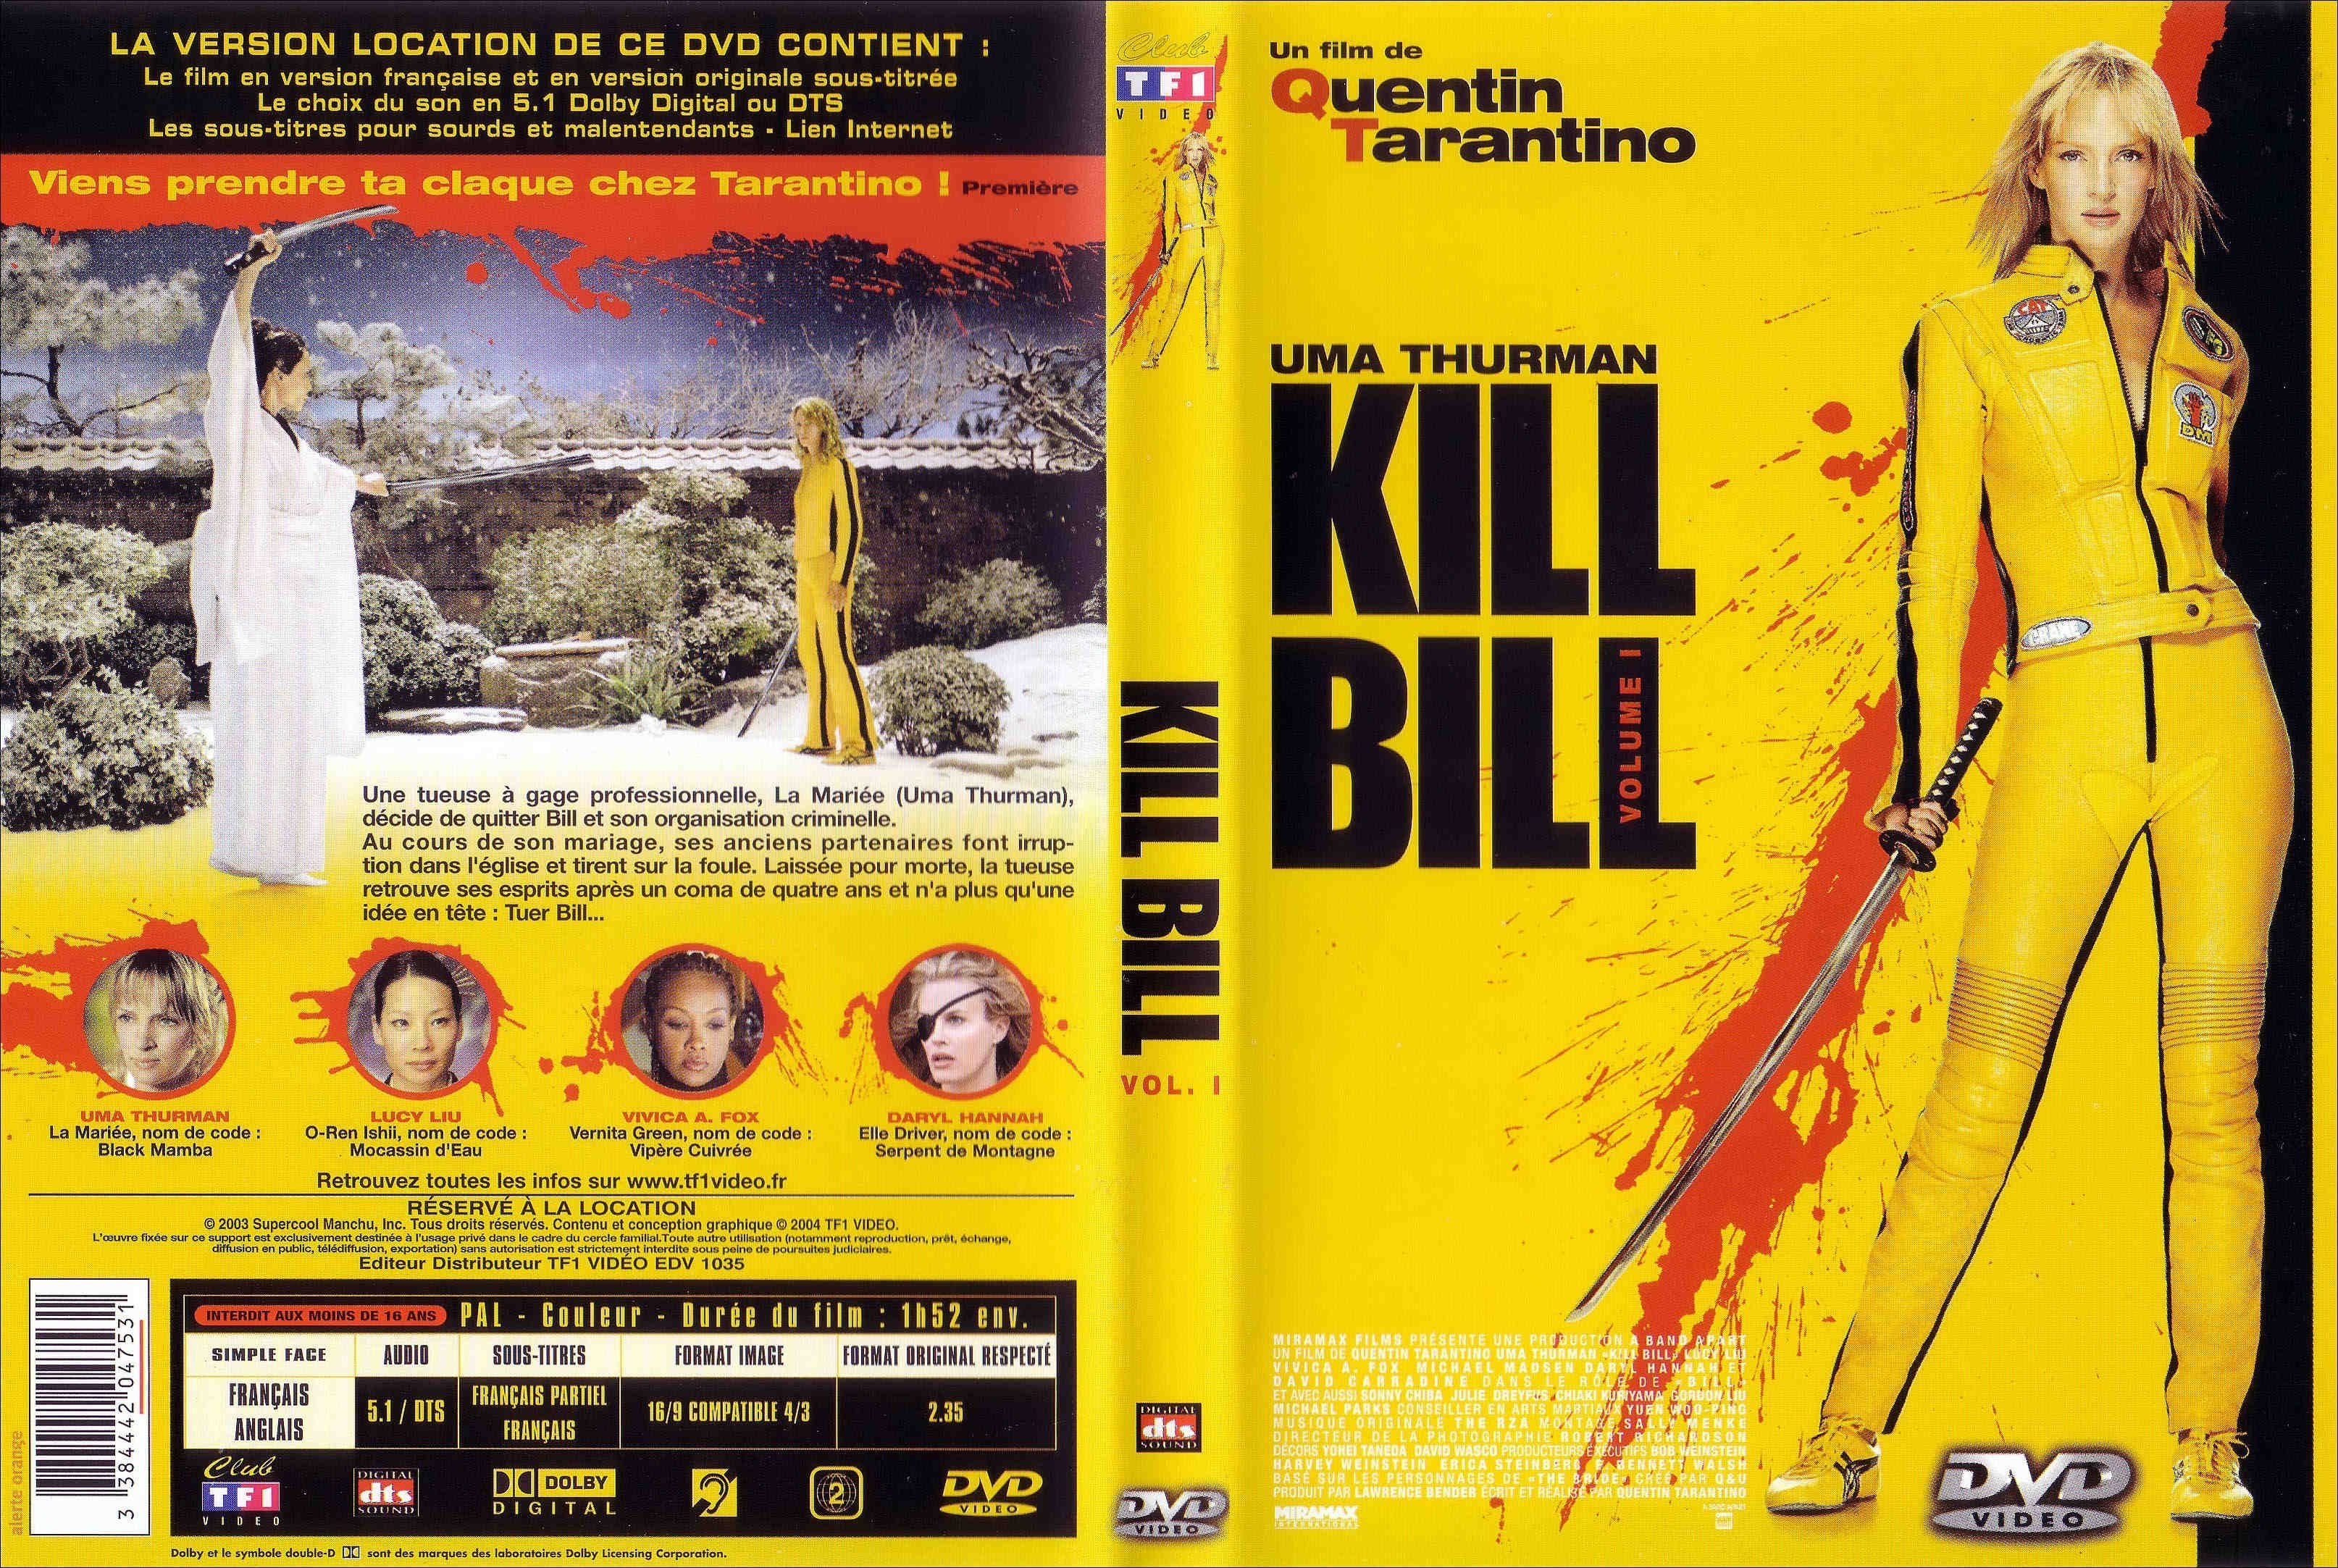 Jaquette DVD Kill bill vol 1